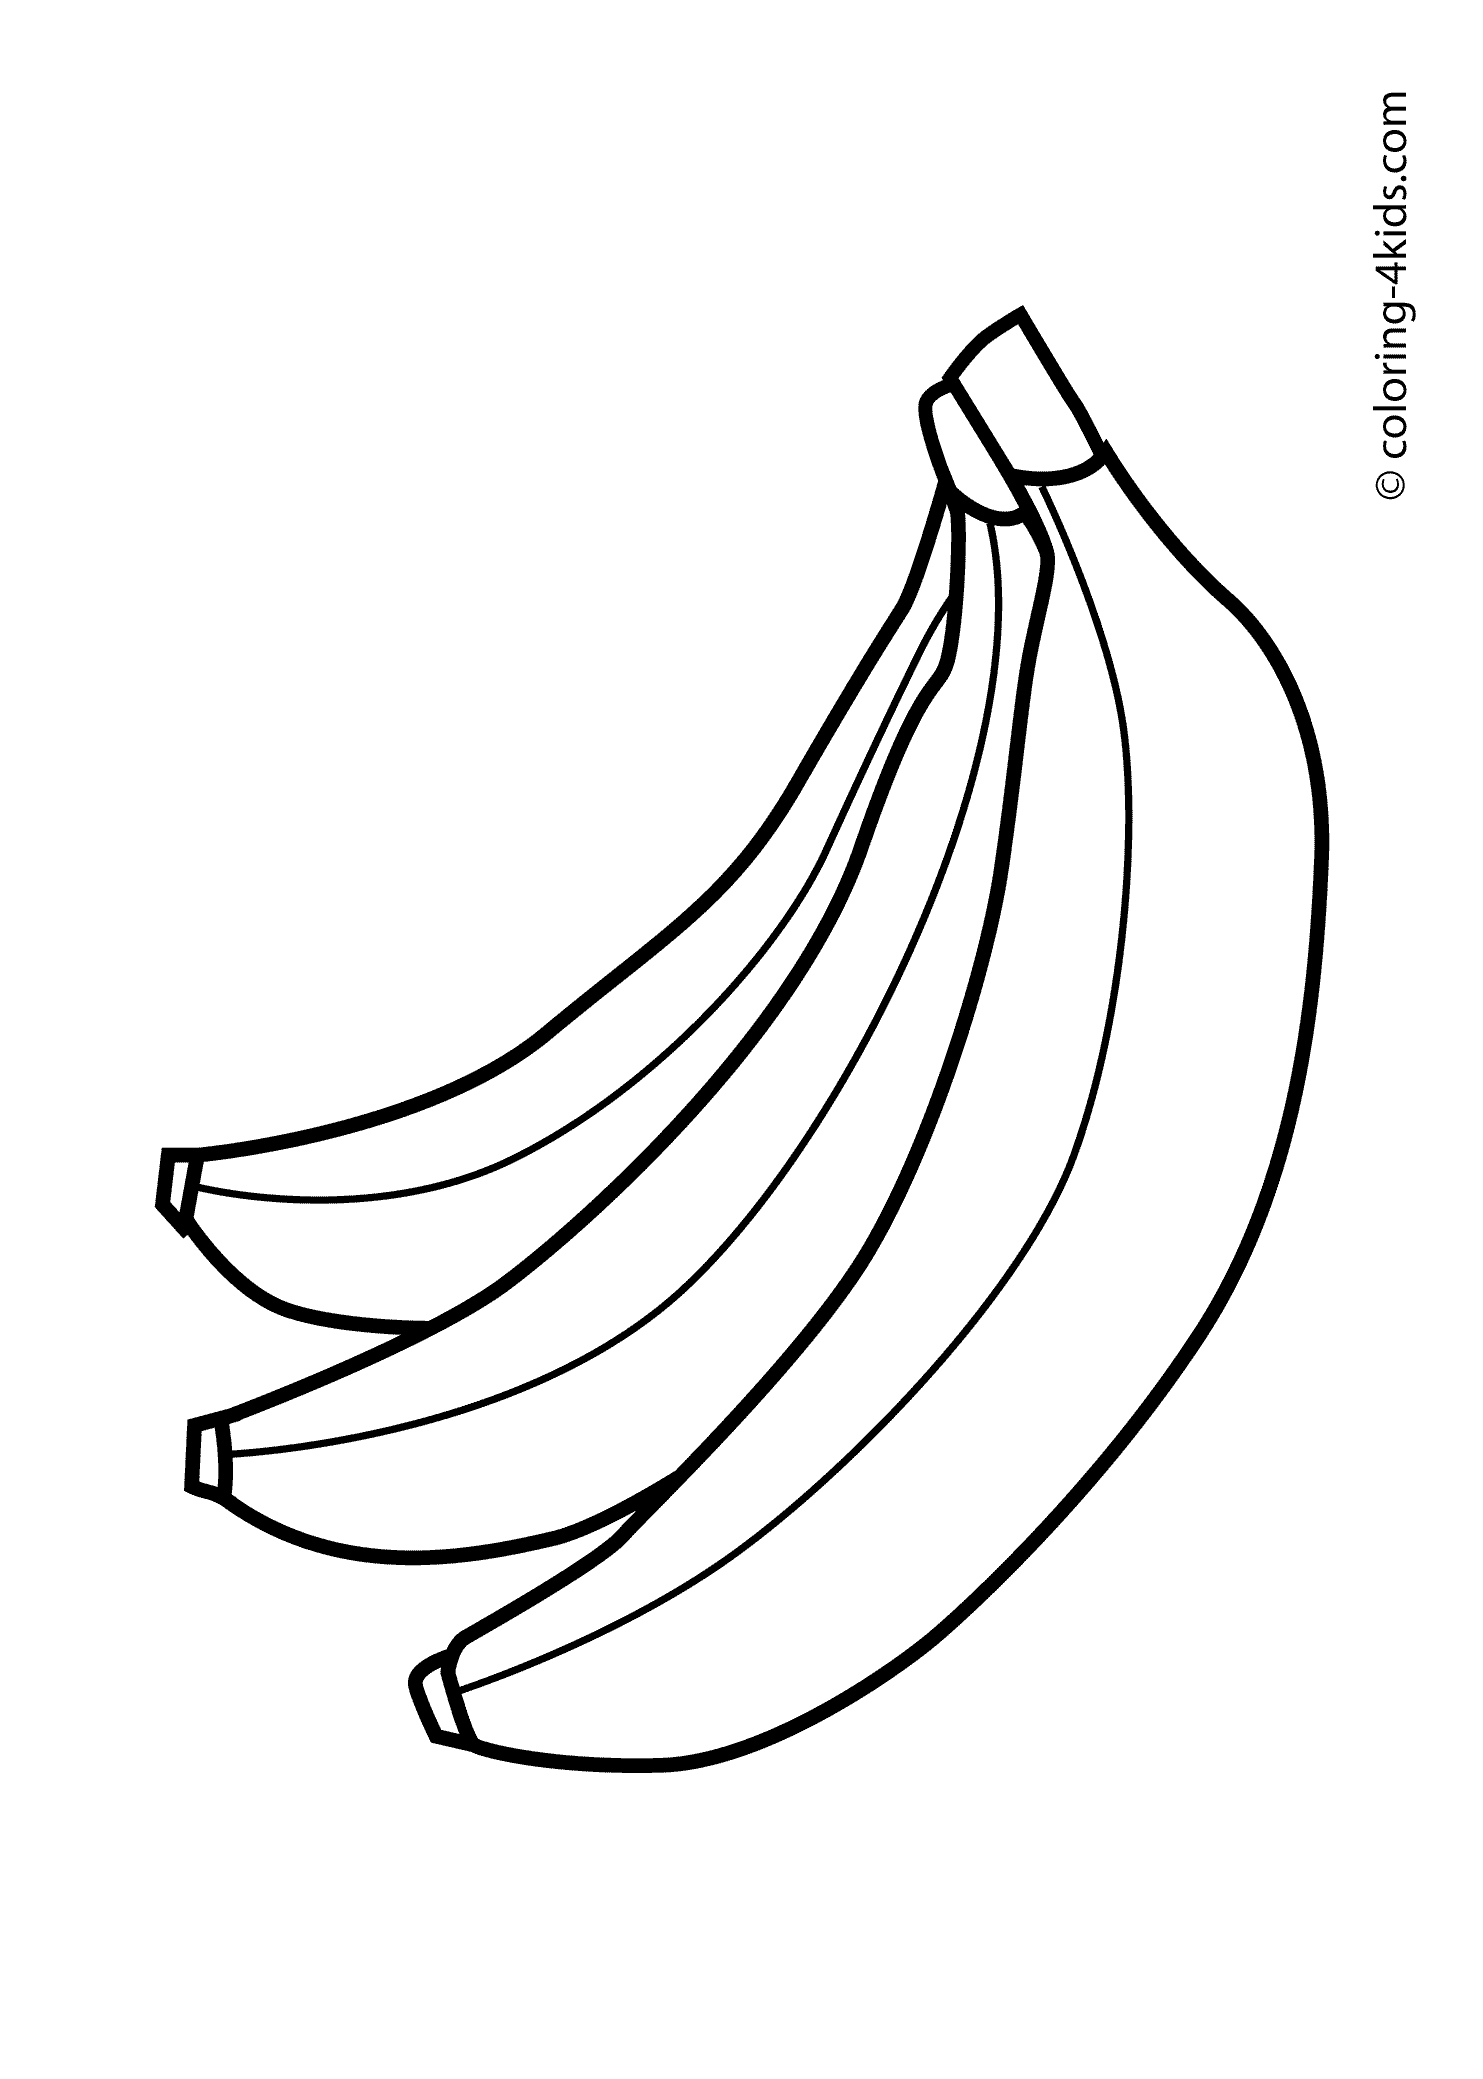 banana template banana templates template banana 